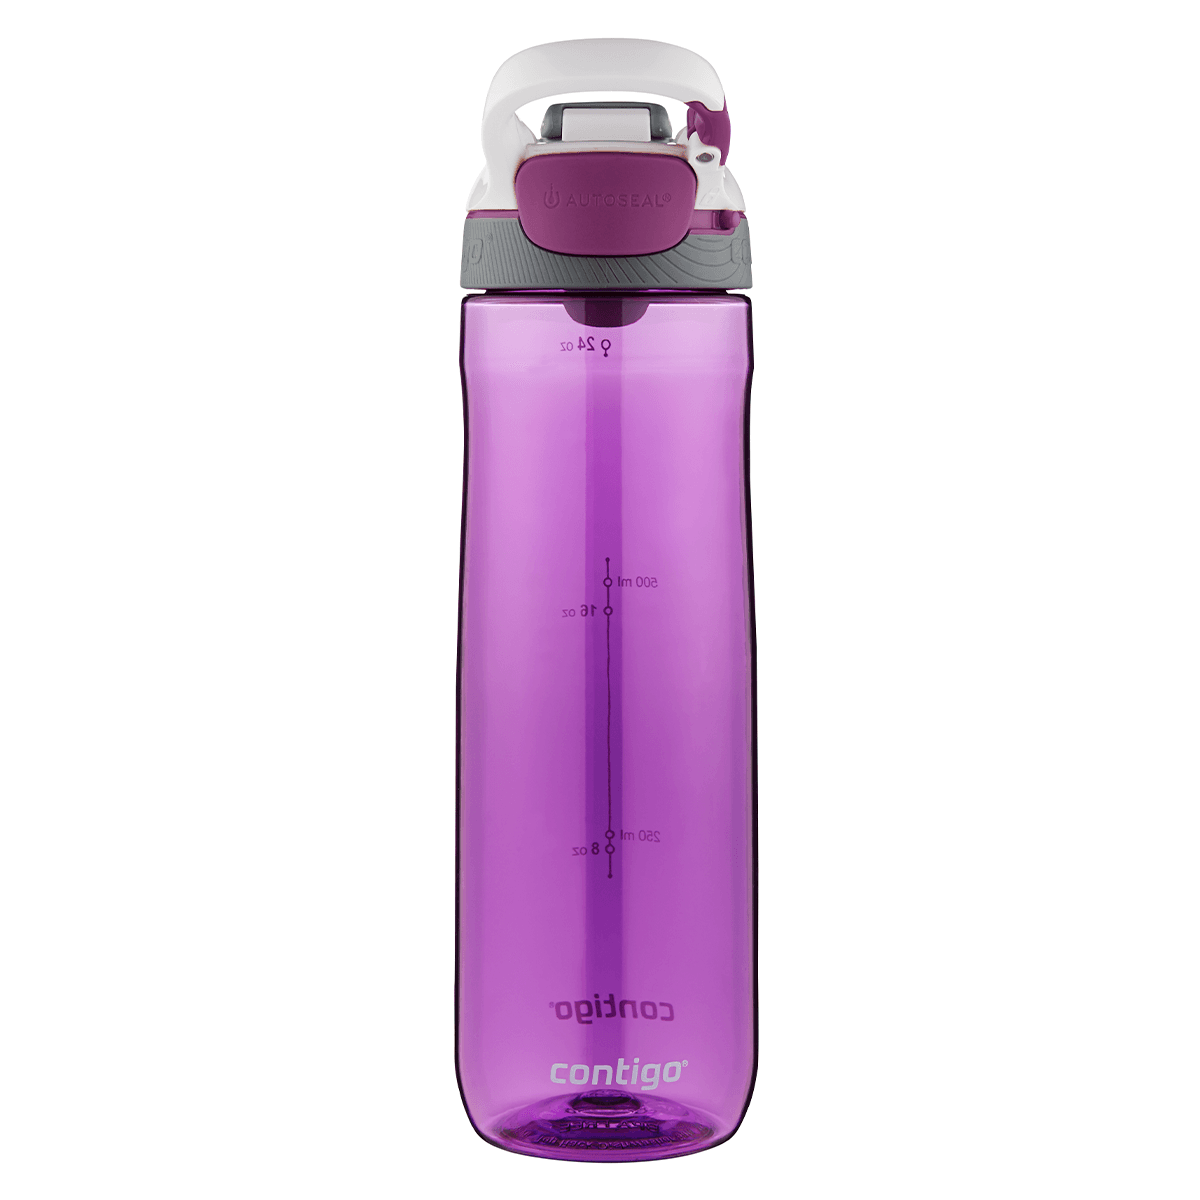 زجاجة ماء كبيرة 720 مل بلاستيك بنفسجي كونتيجو Contigo Orchid Autoseal Cortland Water Bottle